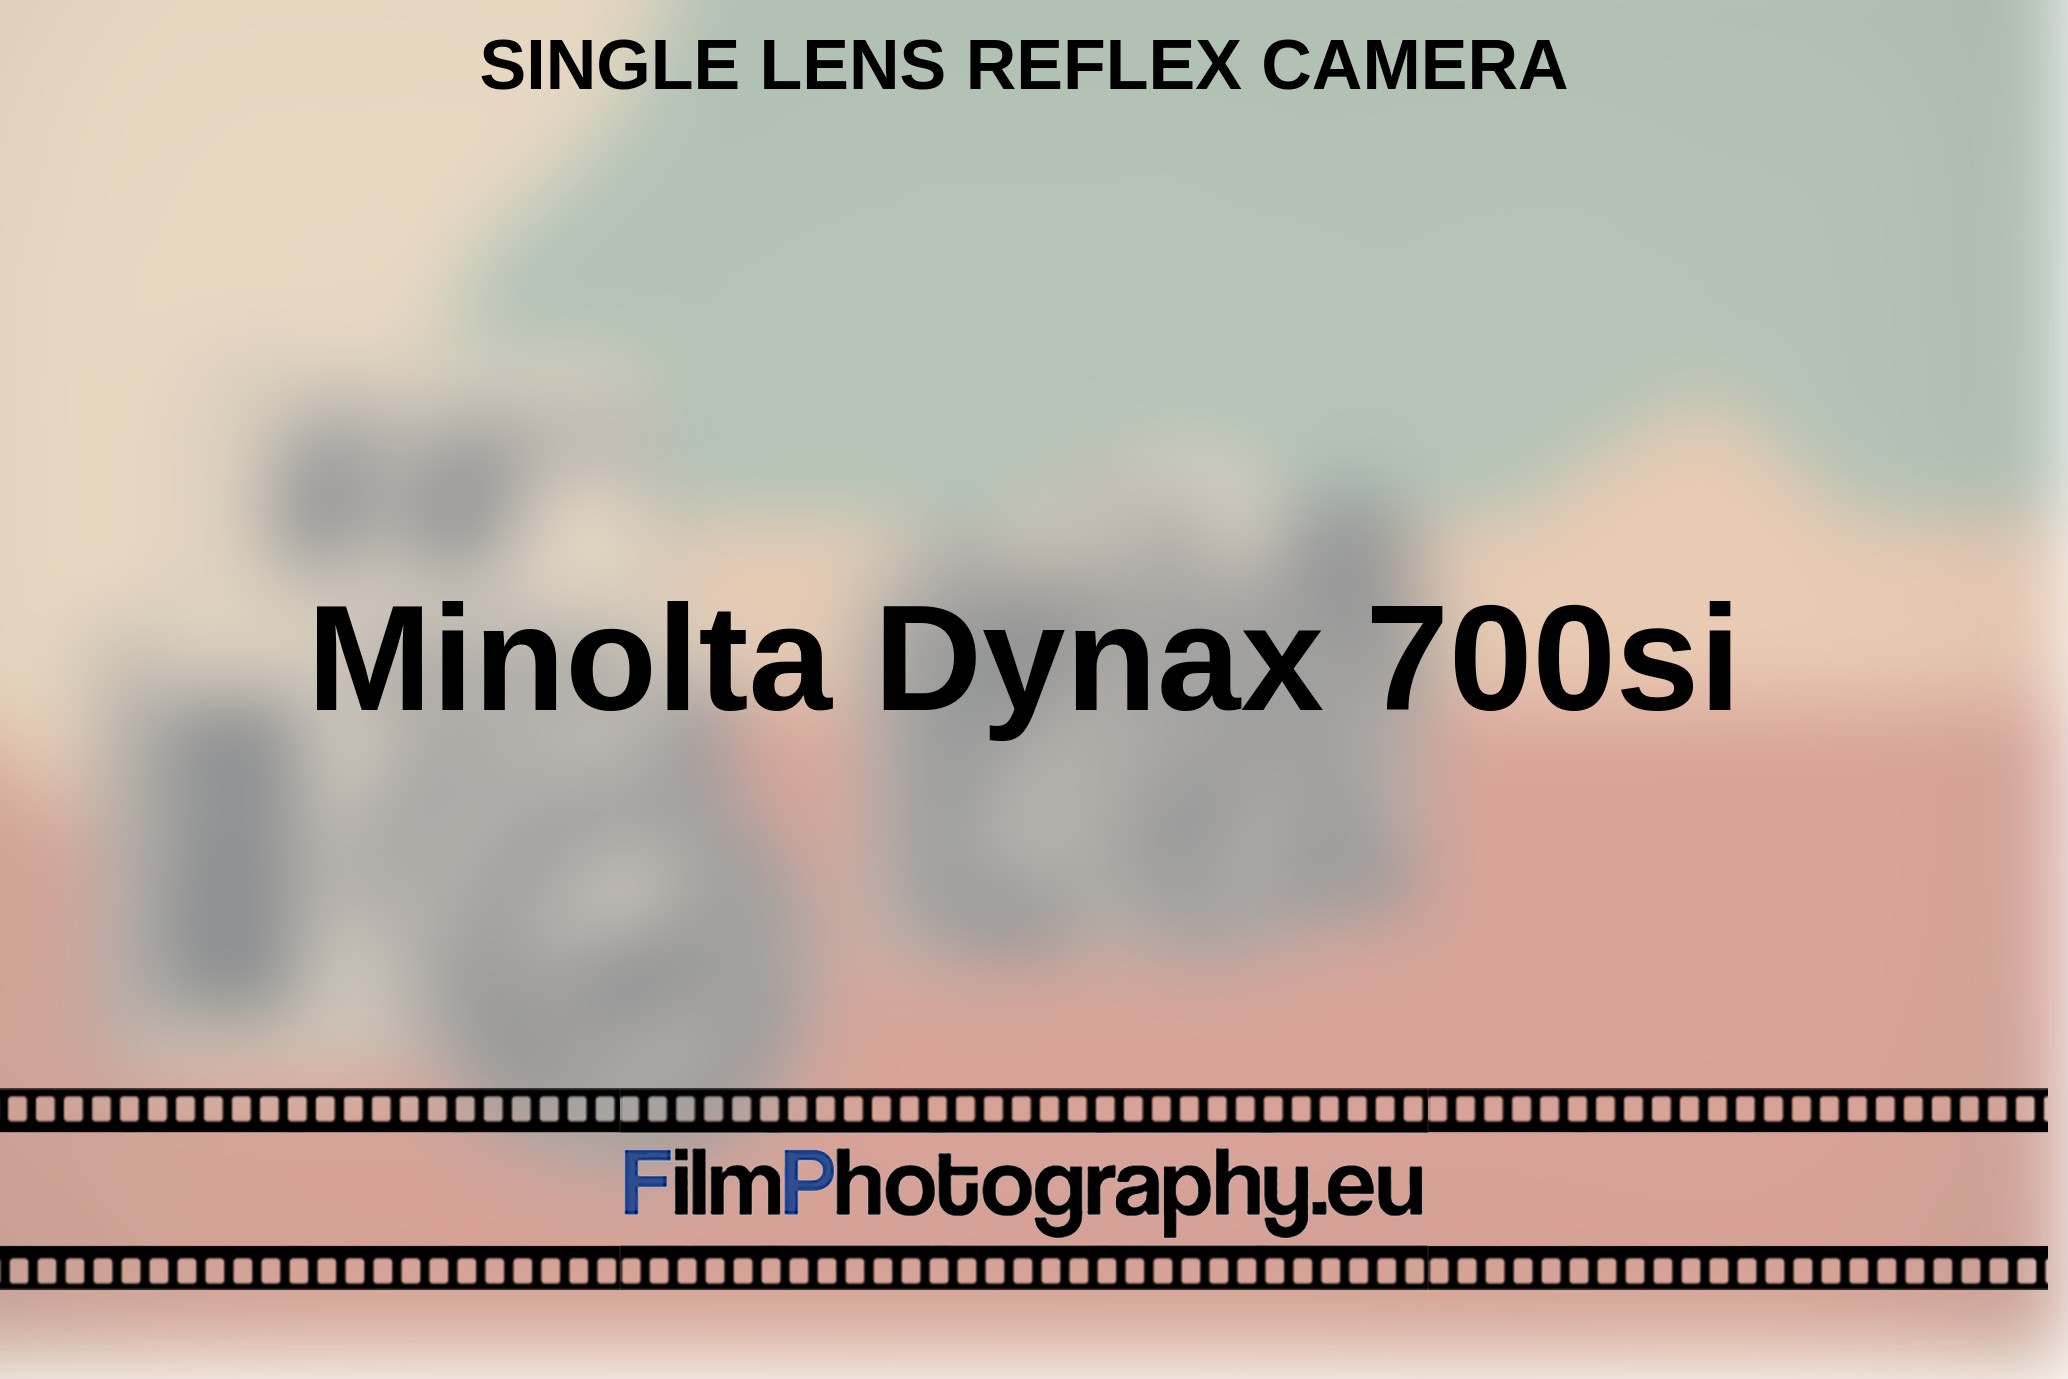 Minolta-Dynax-700si-single-lens-reflex-camera-bnv.jpg